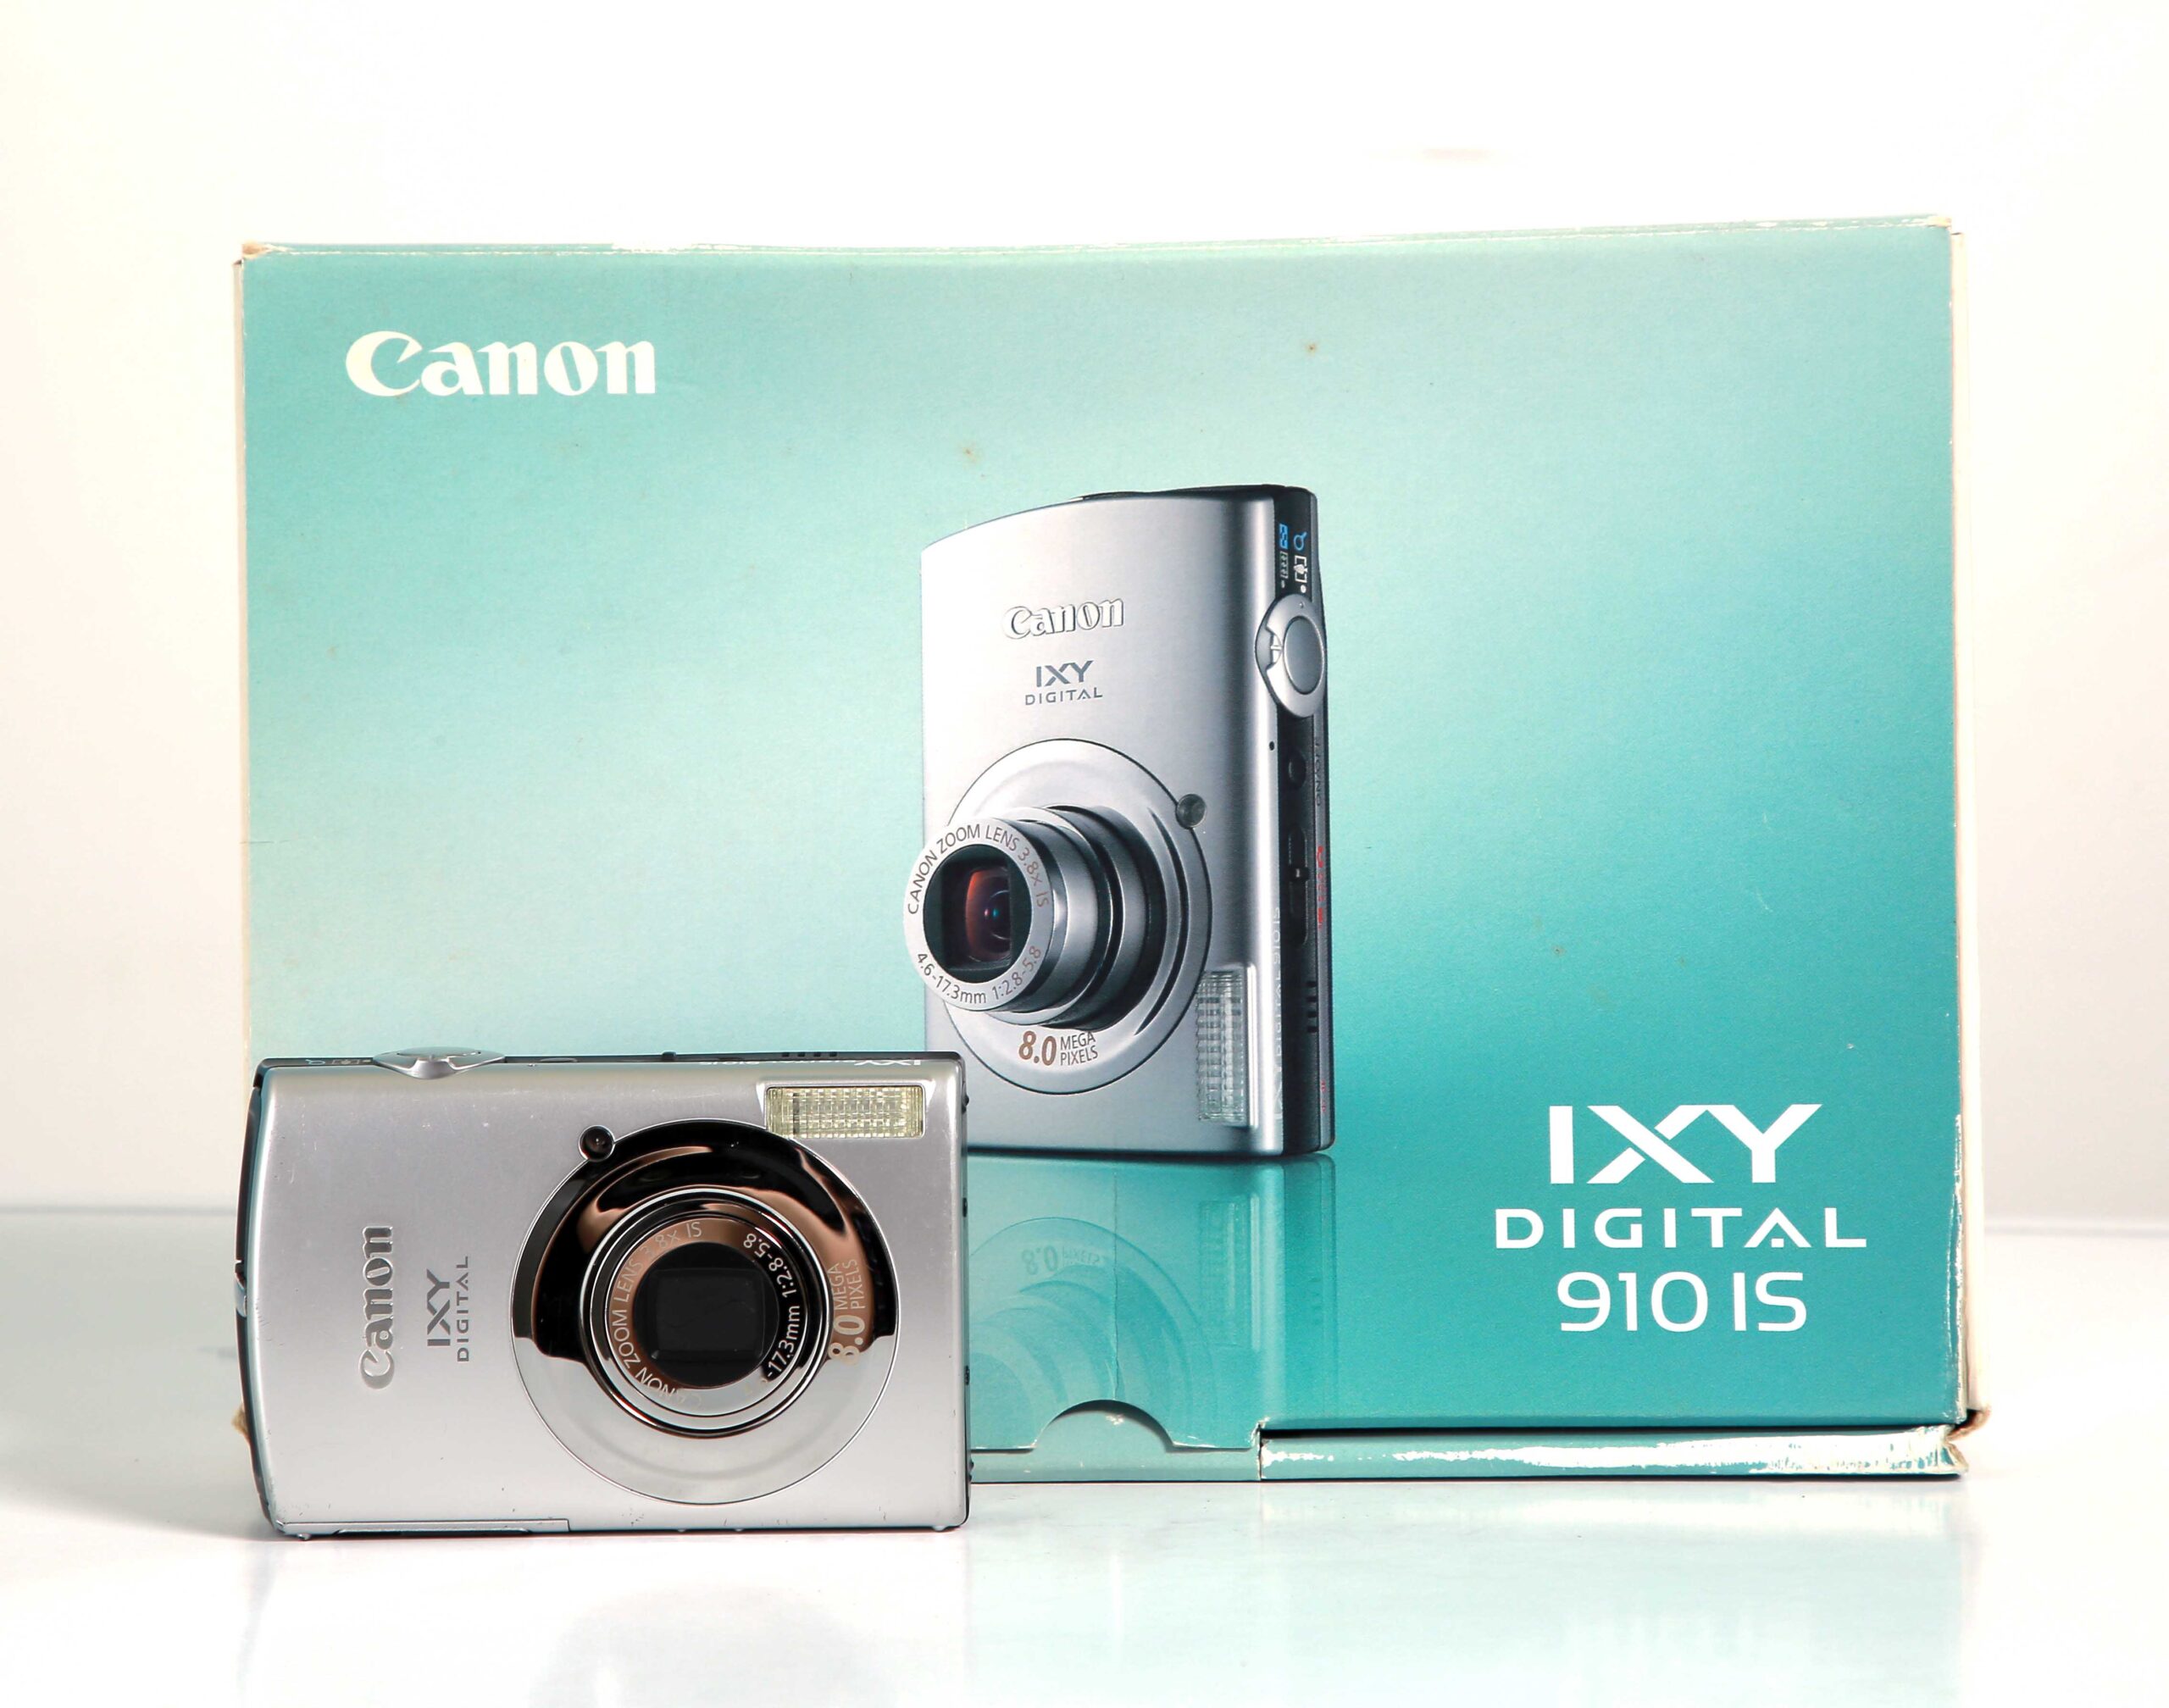 キヤノンCanon IXY DIGITAL 910 IS ジャンク品 - デジタルカメラ